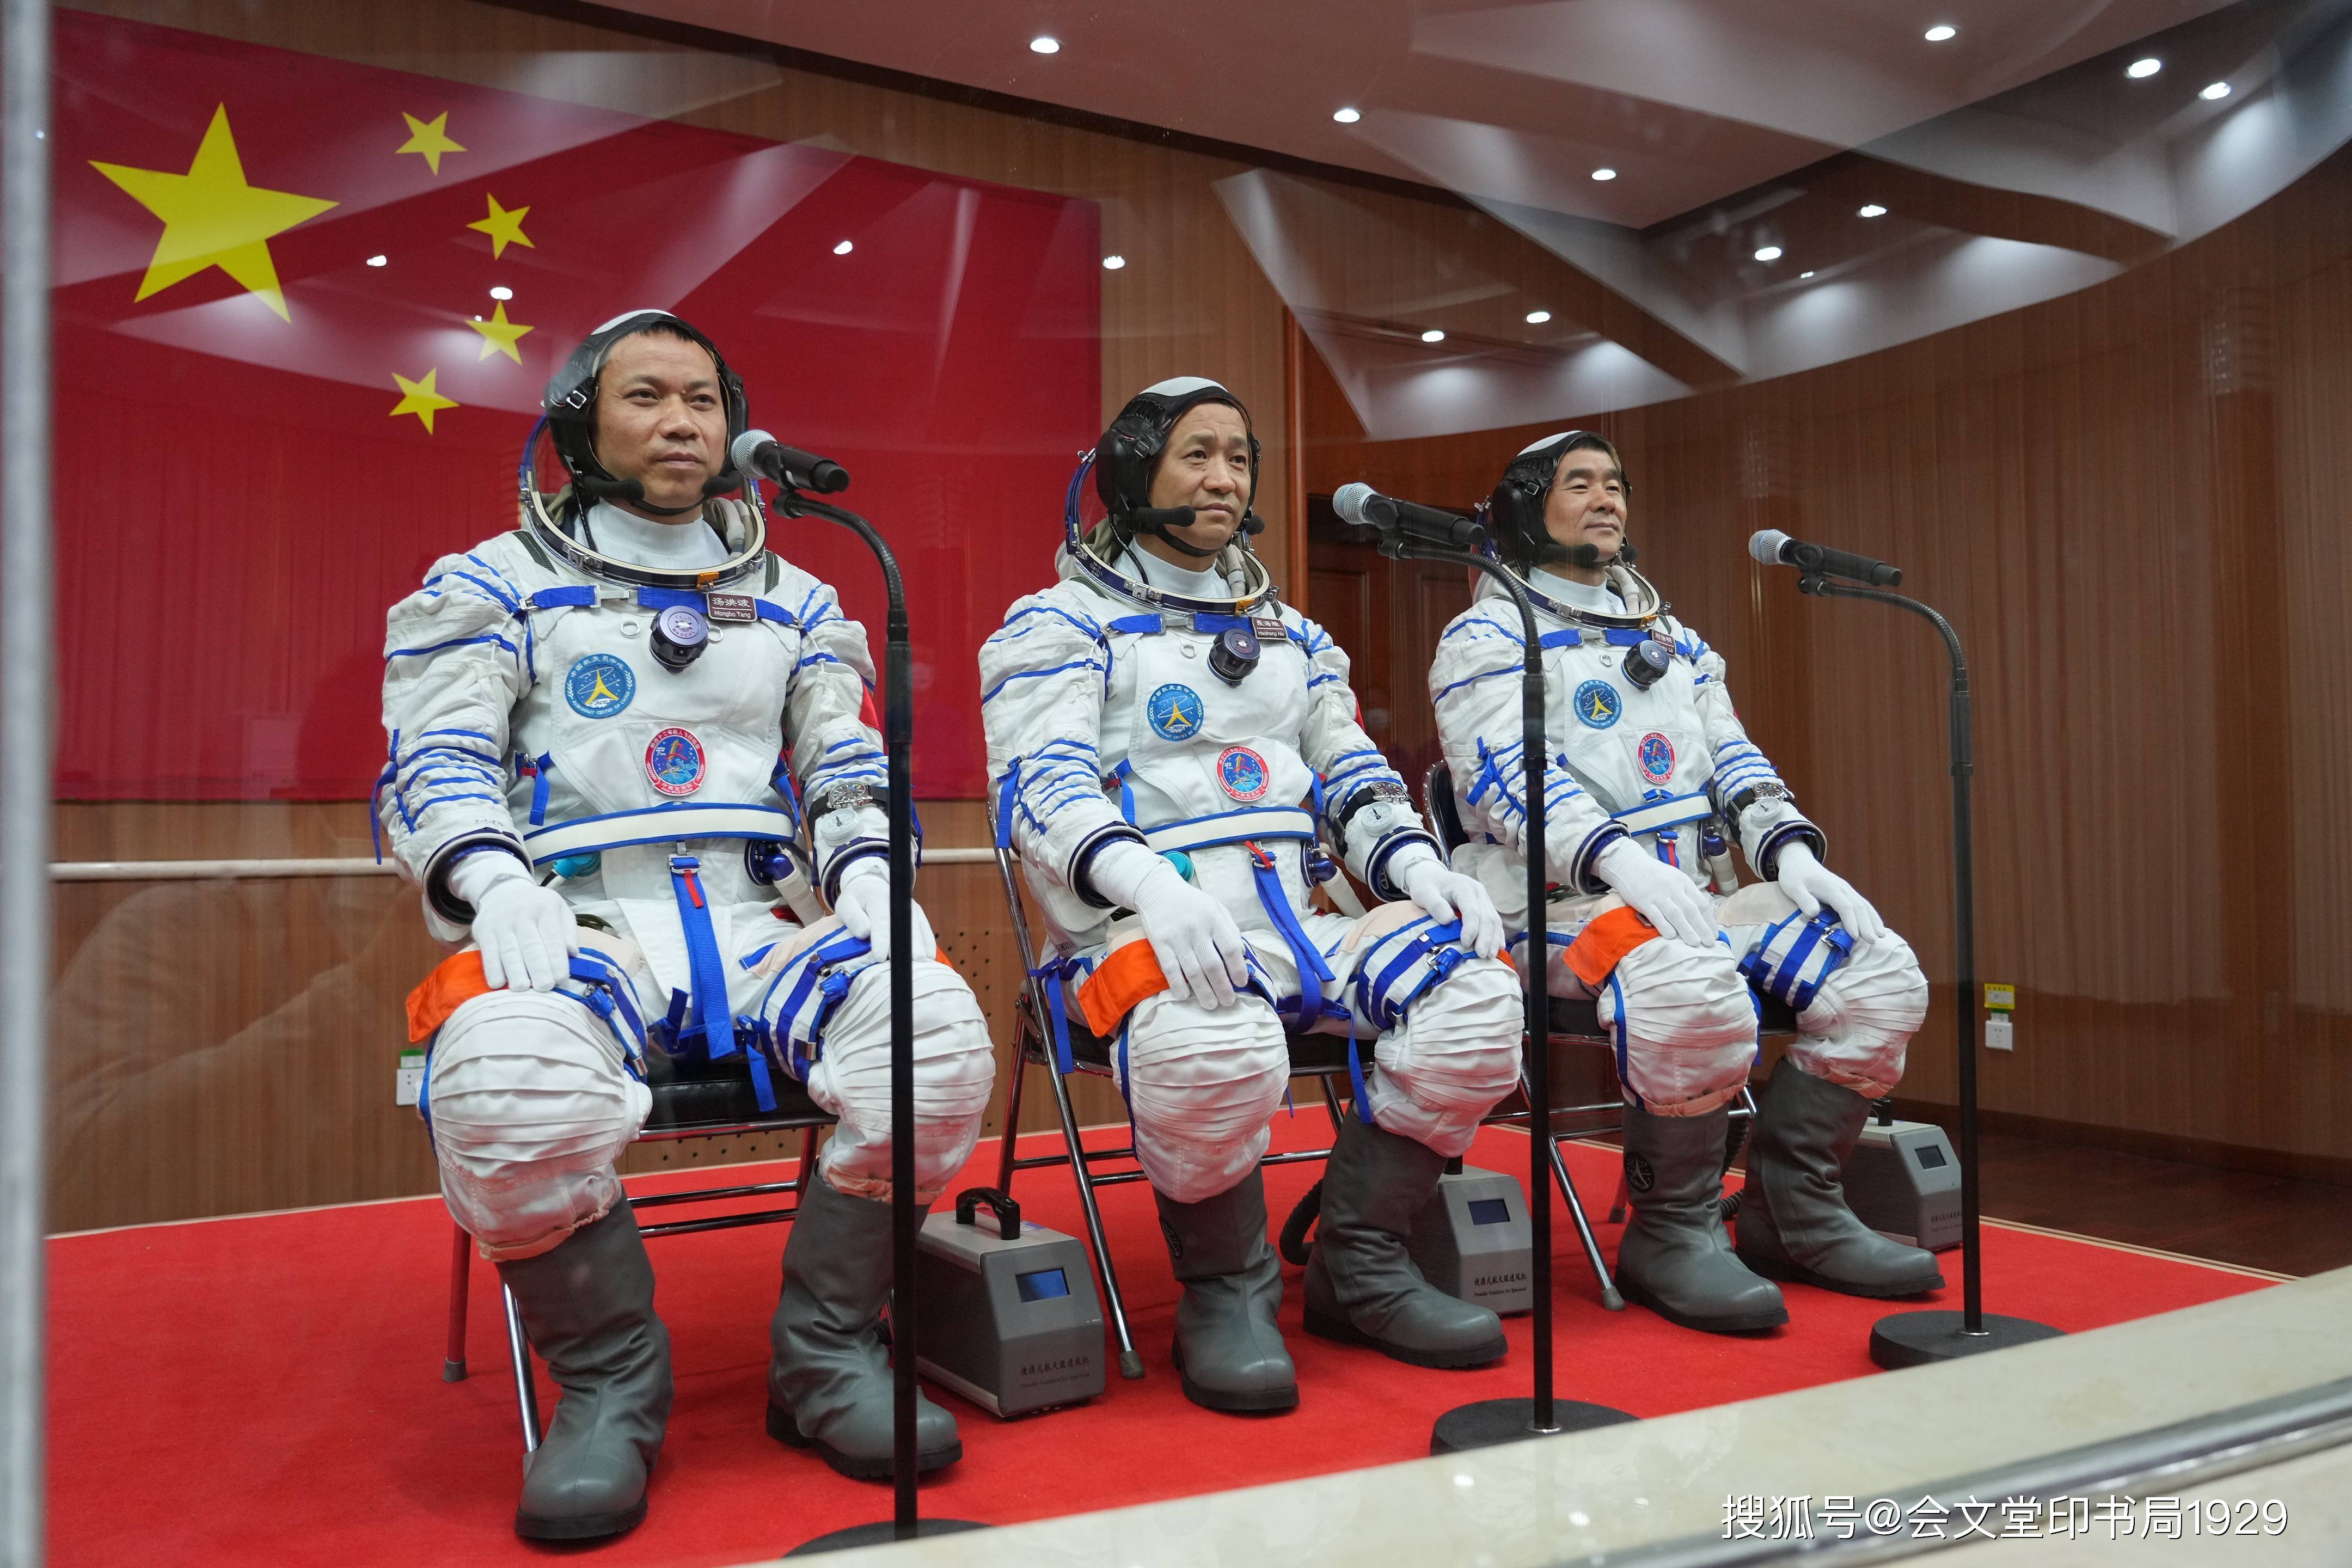 中国航天员航天服姓名标识牌的姓名拼写方式,也可采用